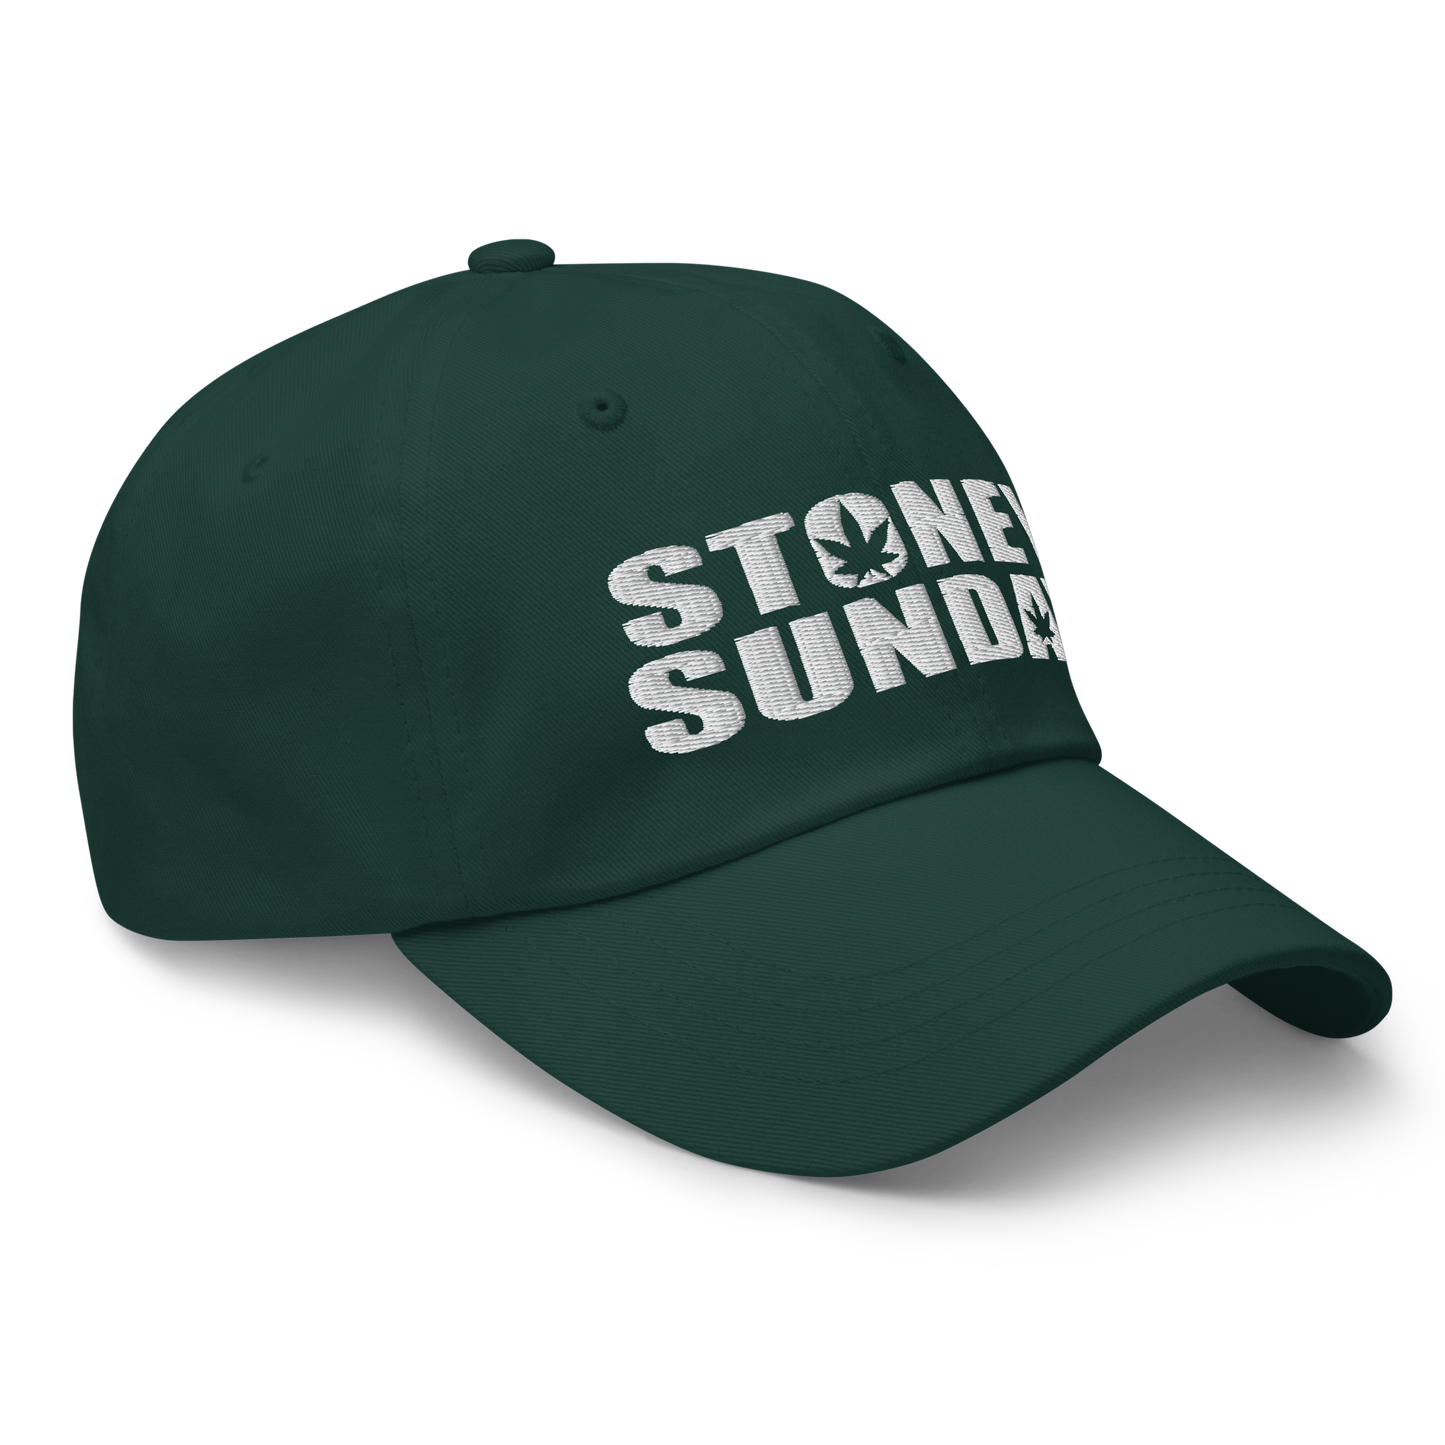 Stoney Sunday Dad Hat